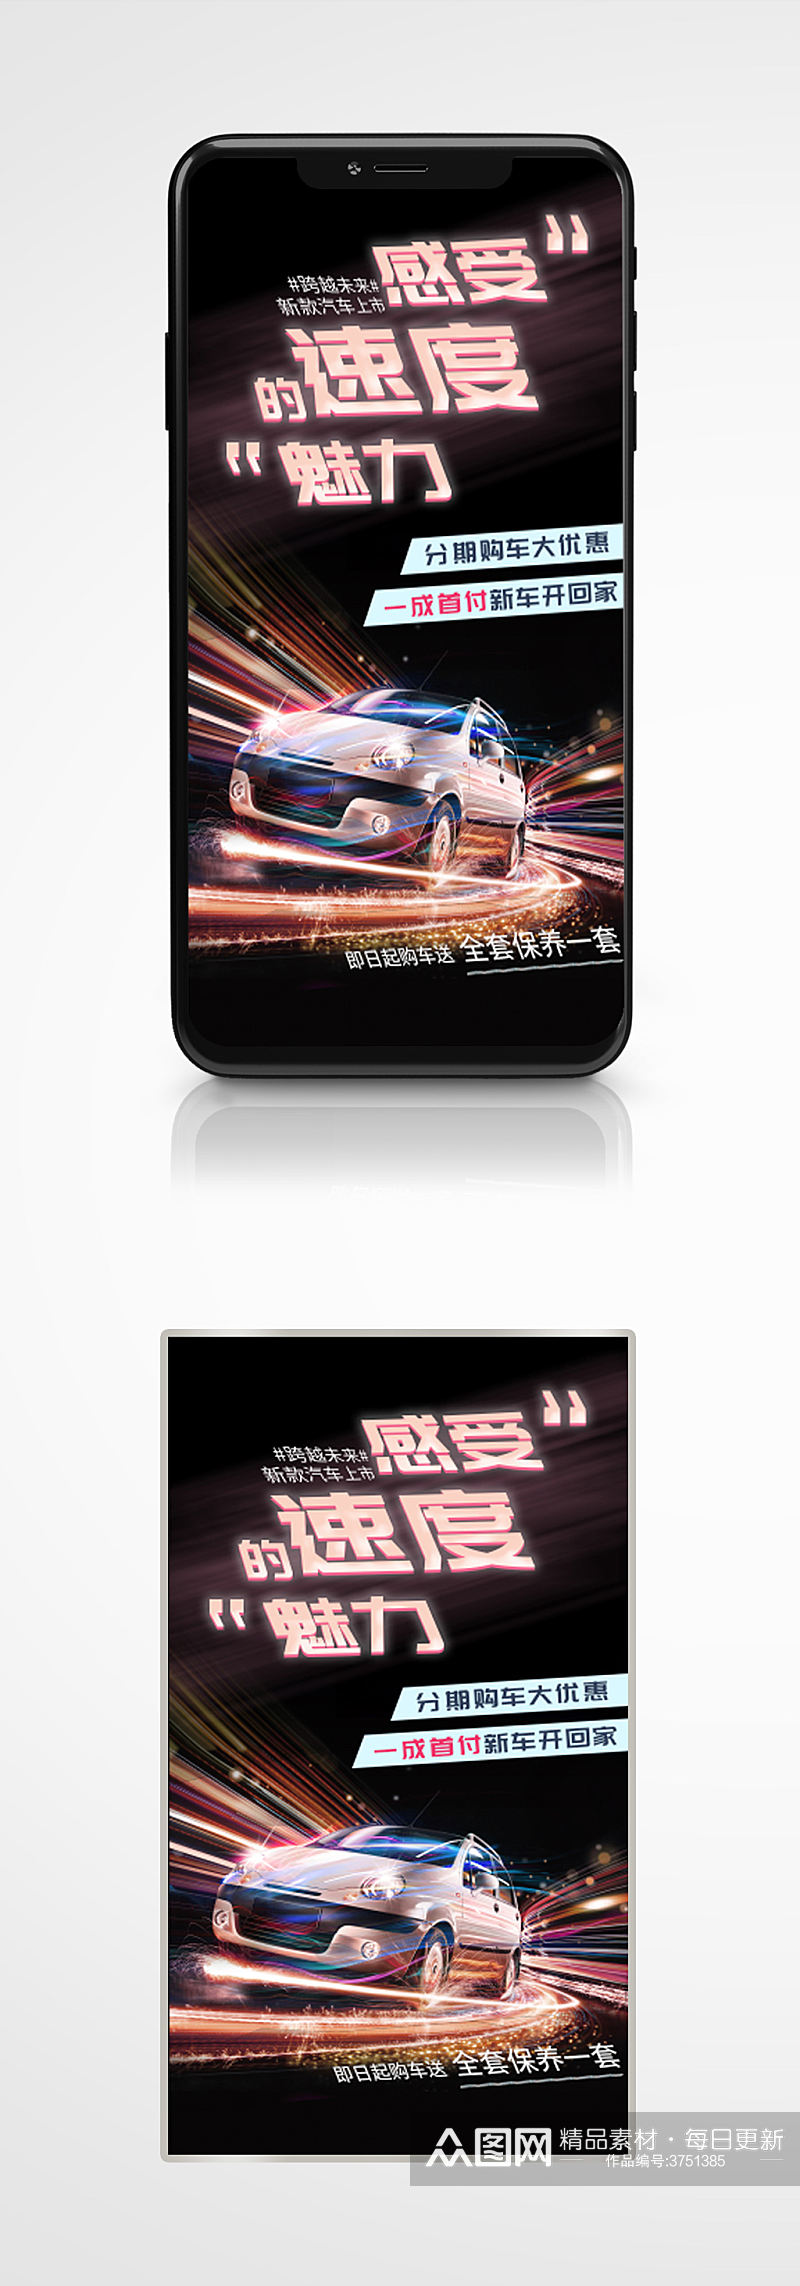 炫酷合成简约汽车宣传手机海报营销素材